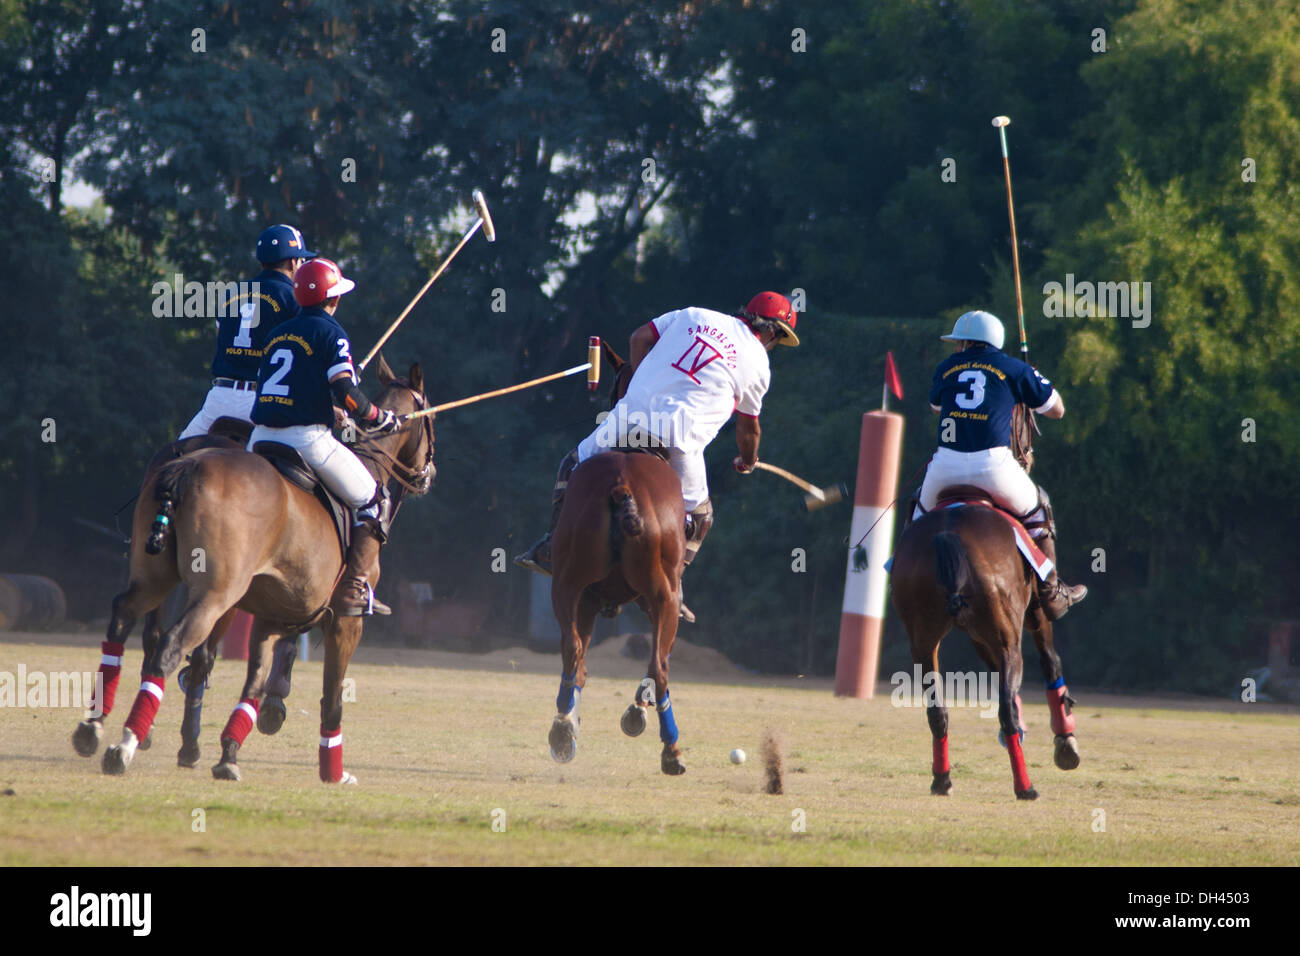 Polo à cheval , sport équestre , joueurs sur des chevaux frappant le ballon , jodhpur , Rajasthan , Inde , asie Banque D'Images